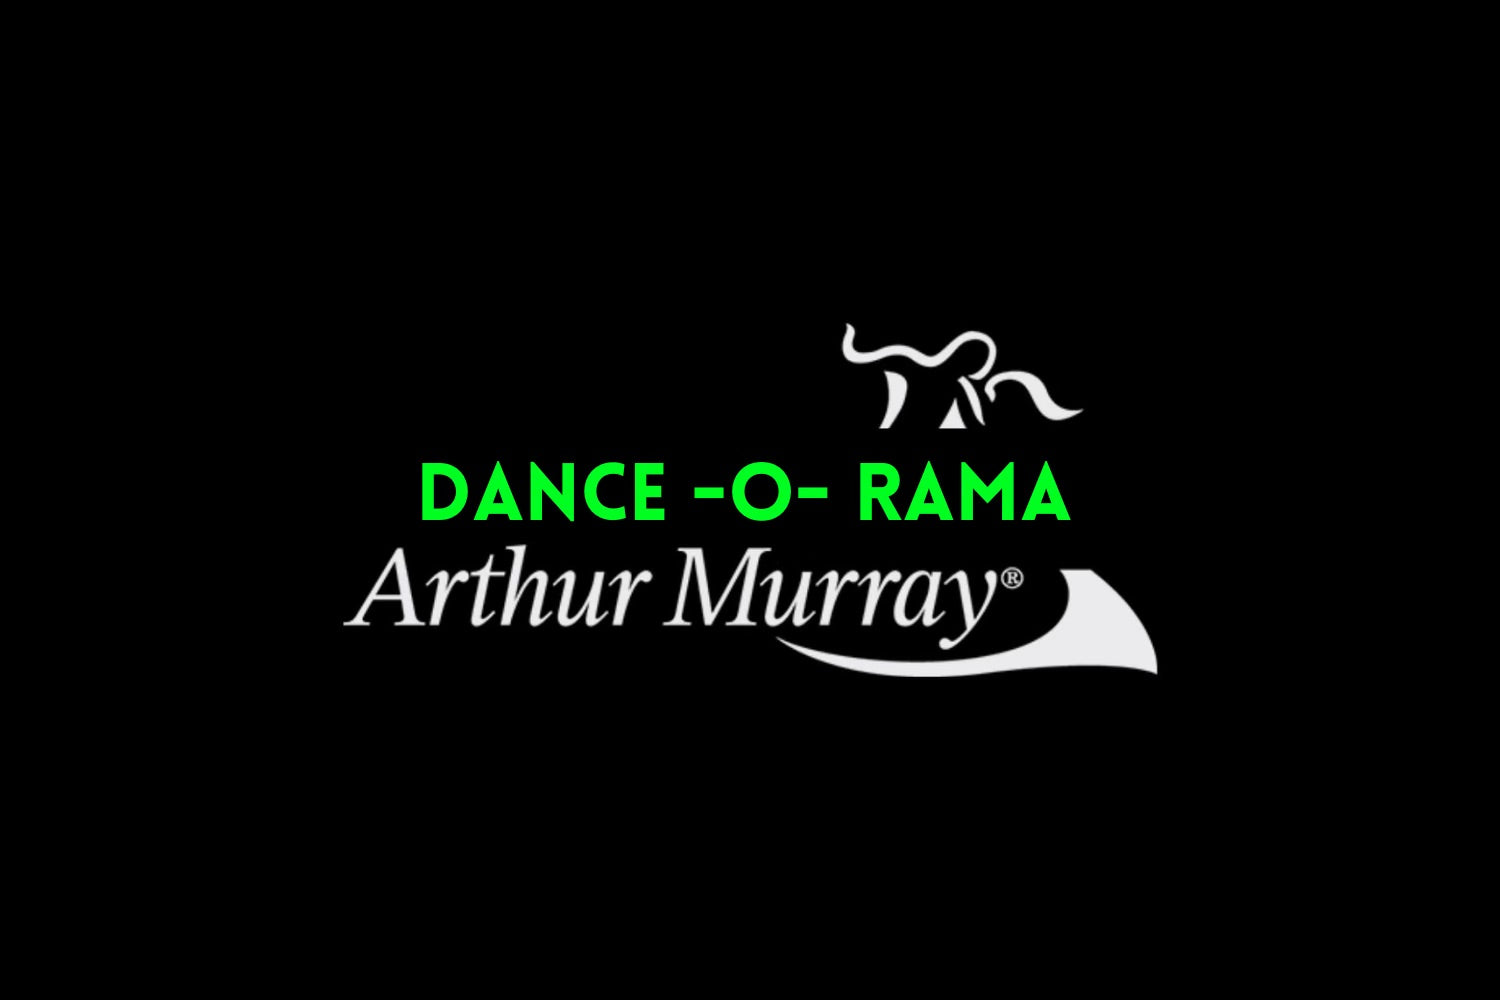 Lezioni di Ballo Arthur Murray Milano Iscriviti Dance-O-Rama